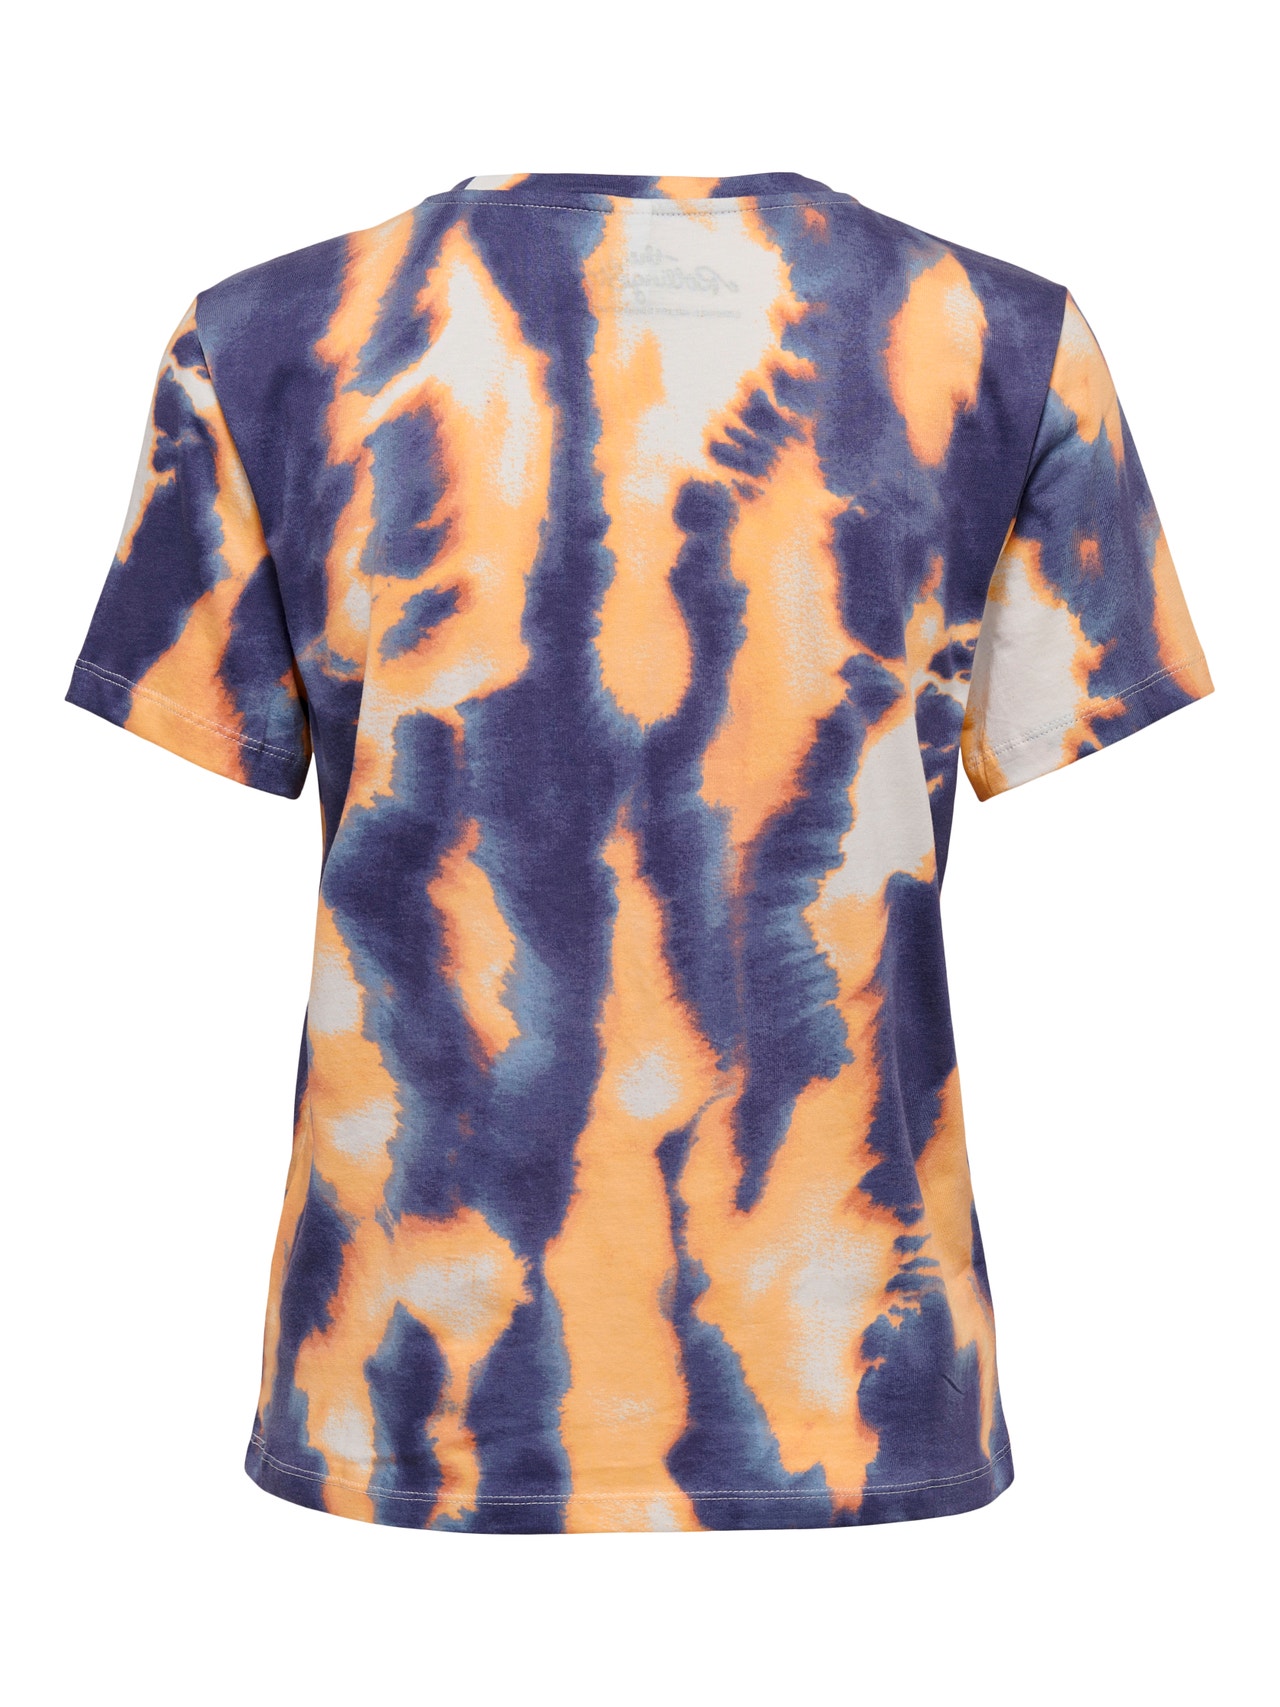 ONLY Normal geschnitten Rundhals T-Shirt -Terra Cotta - 15259593